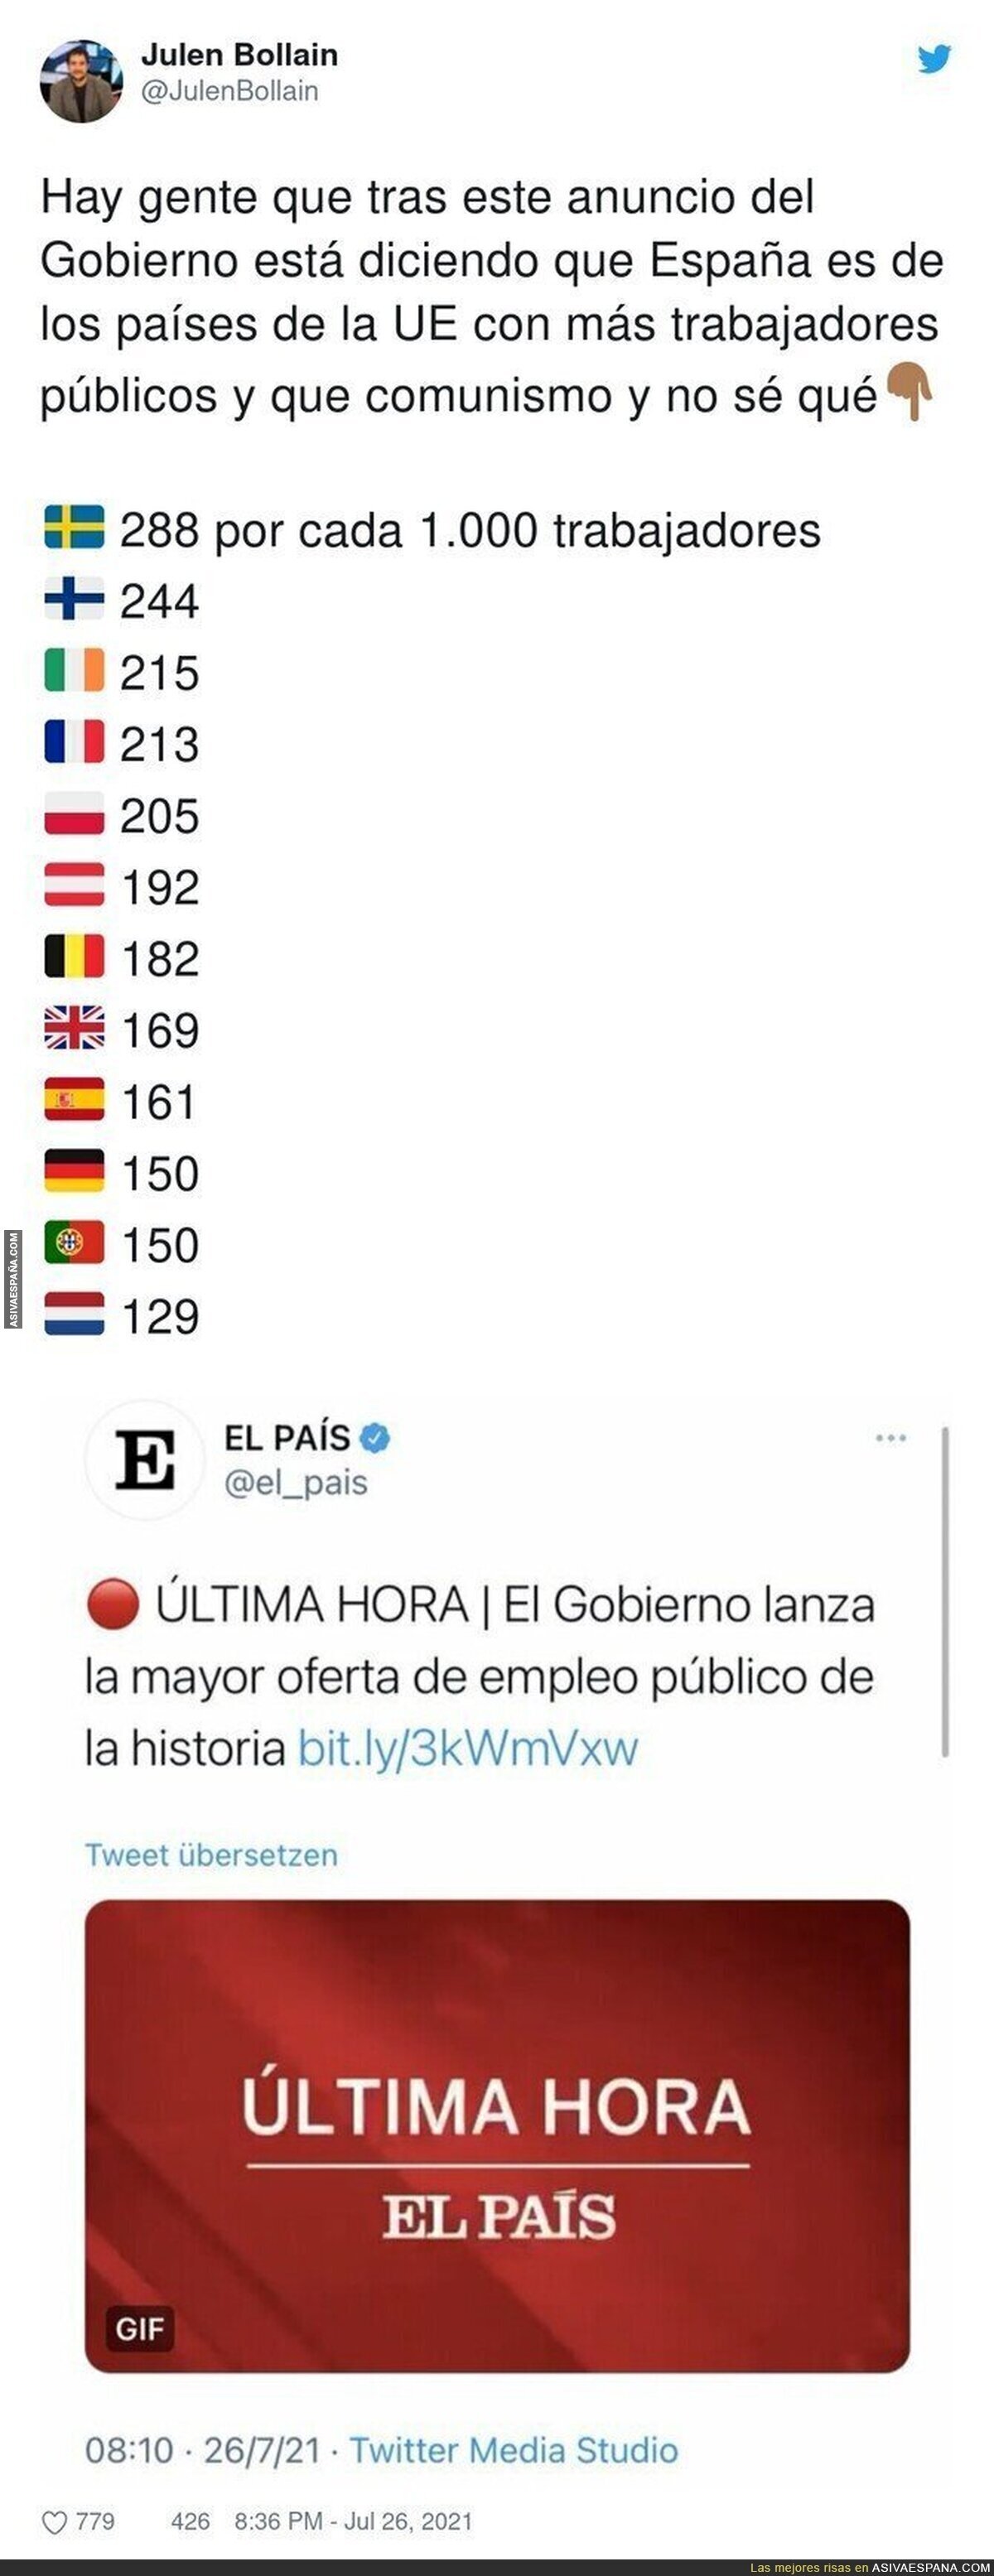 La mentira de que España tiene muchos trabajadores públicos